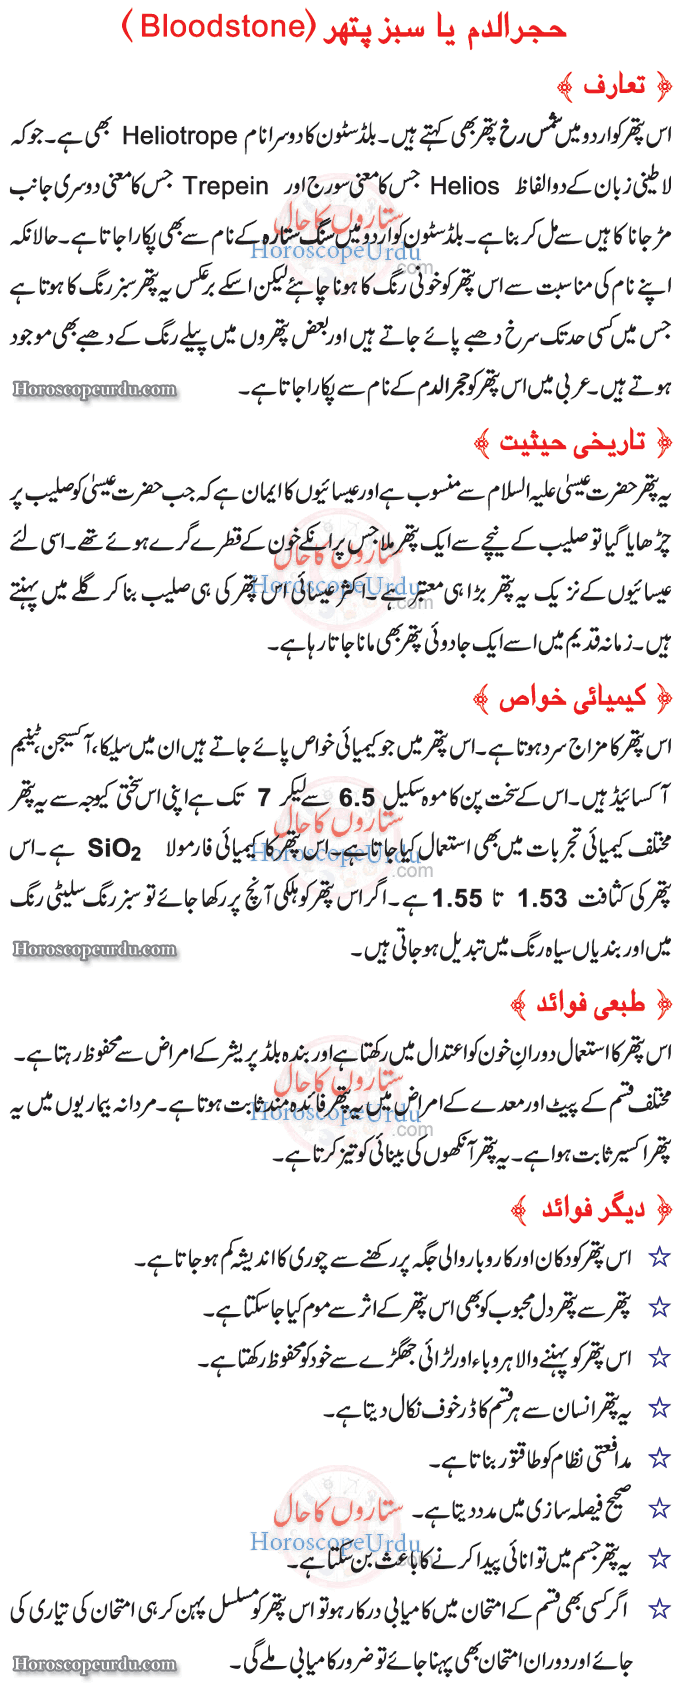 Bloodstone Introduction in Urdu